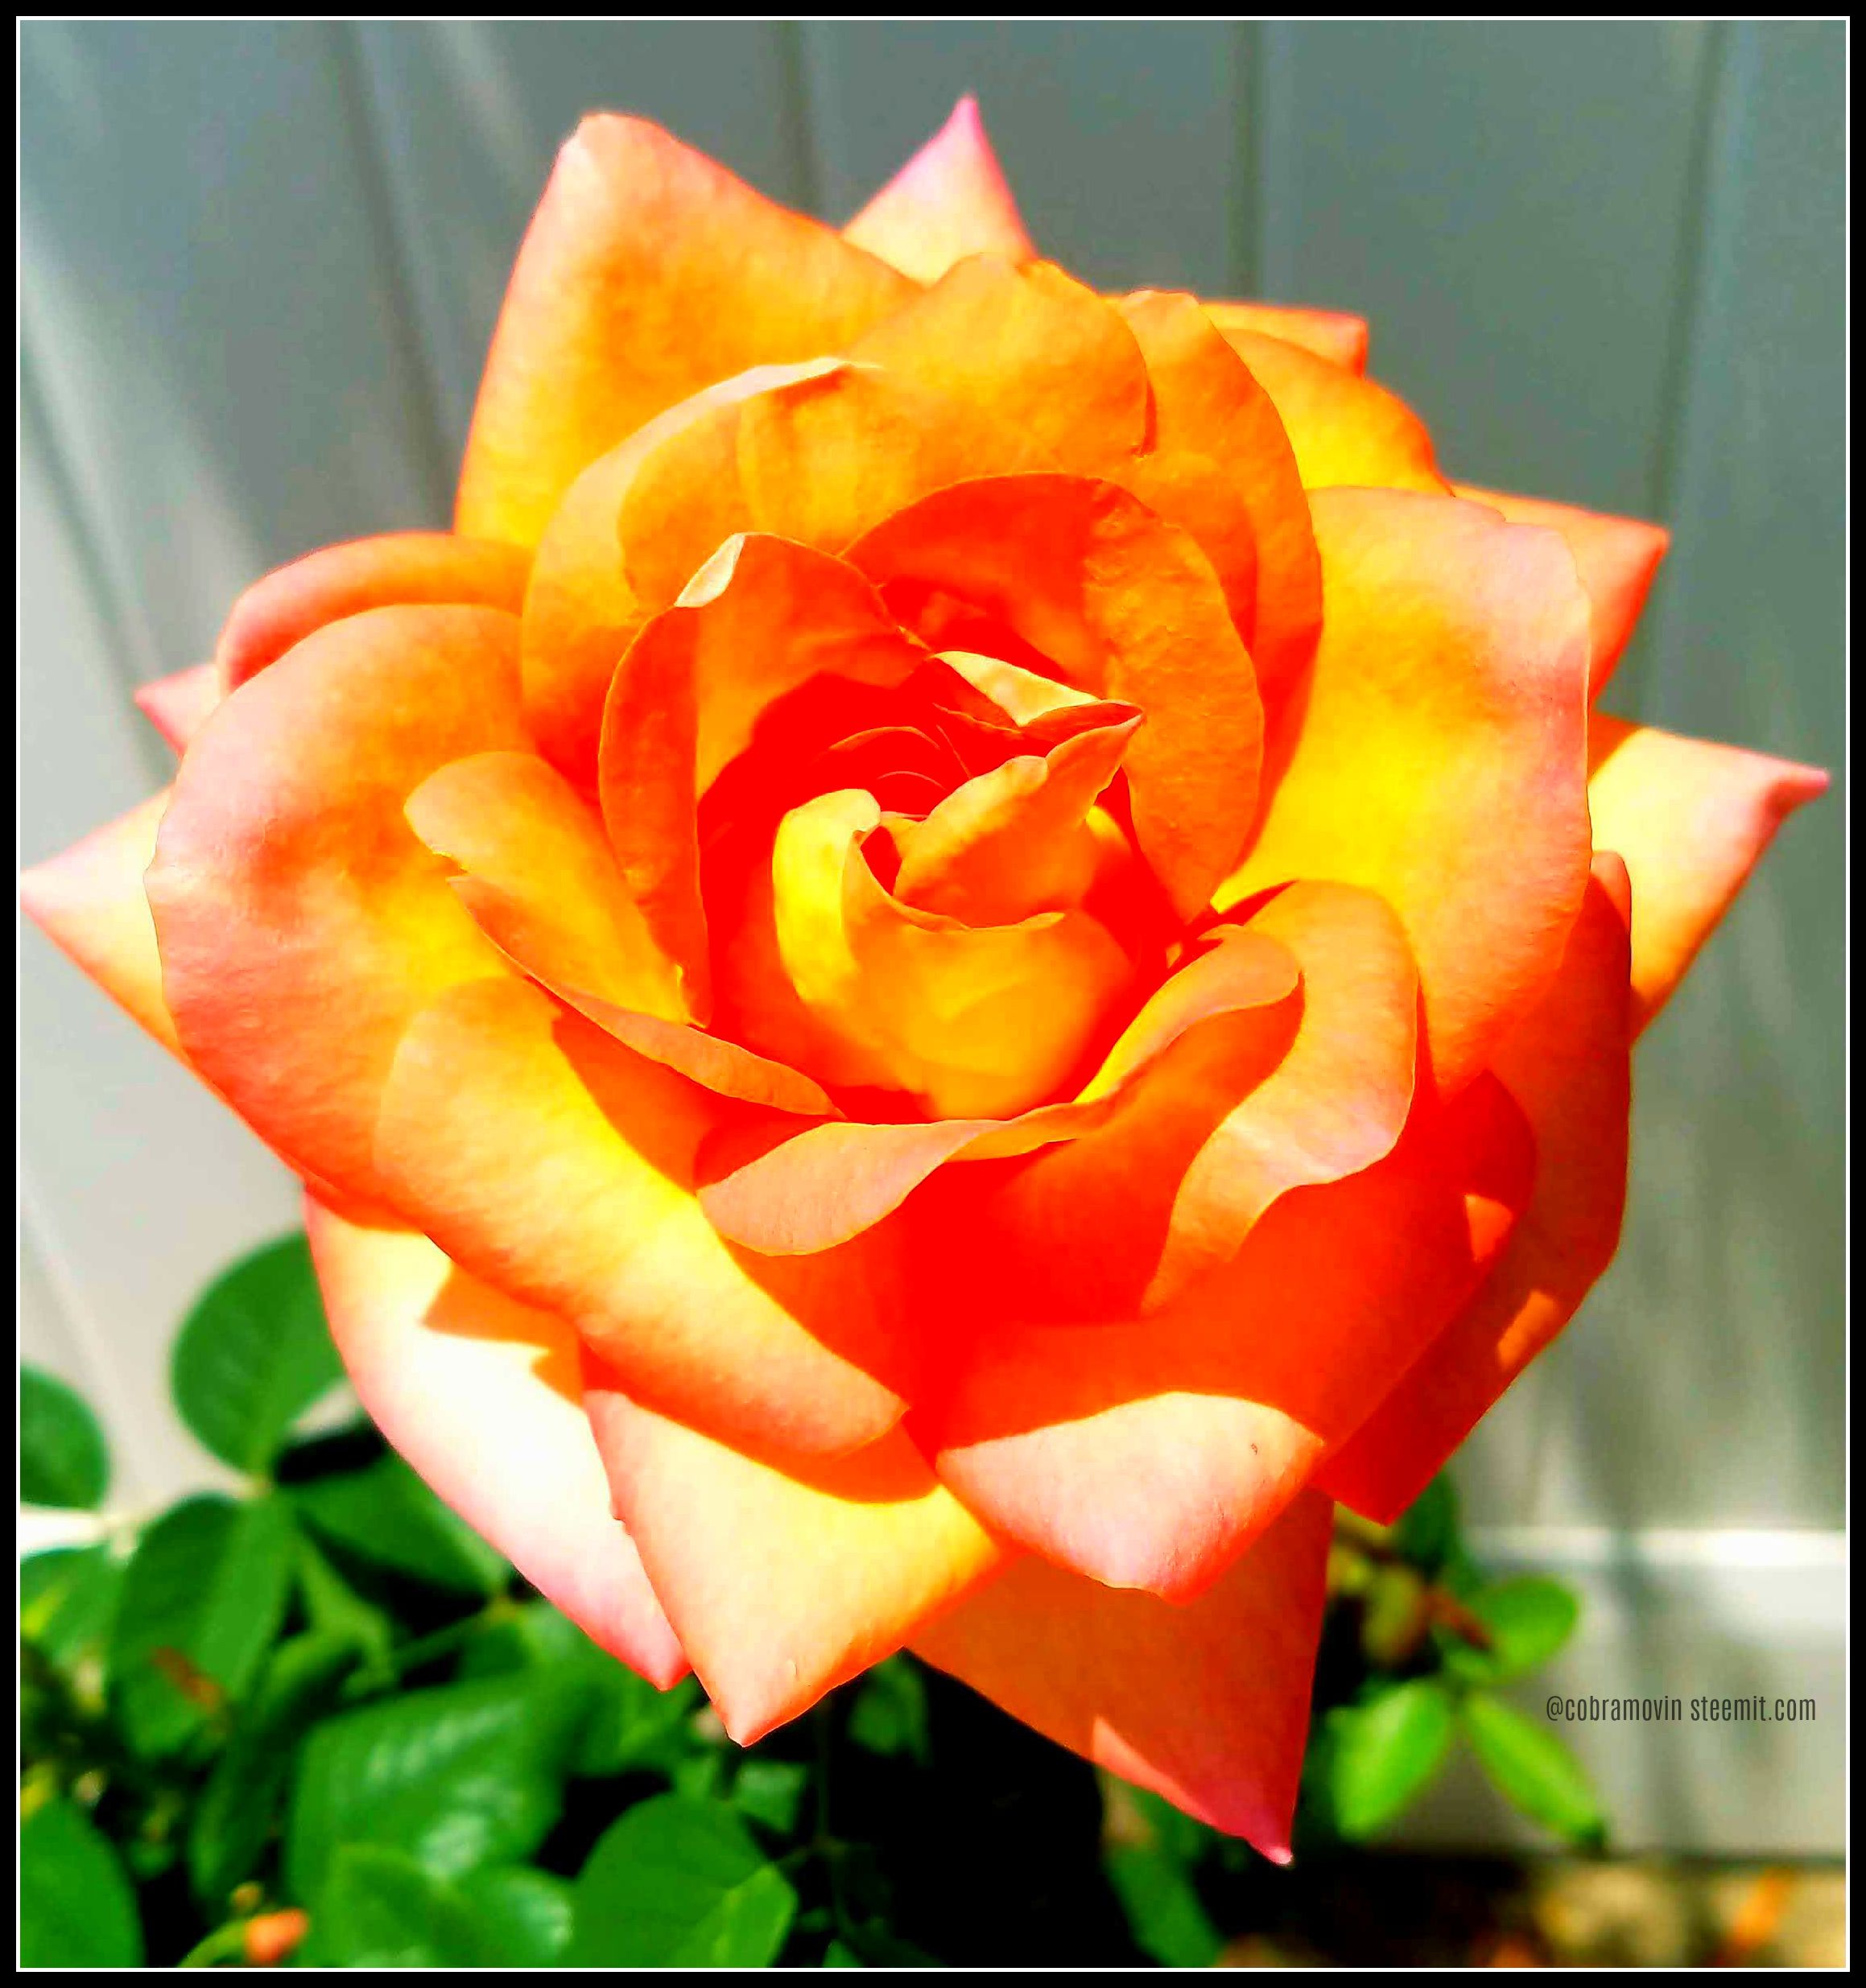 Full bloom orange rose.jpg